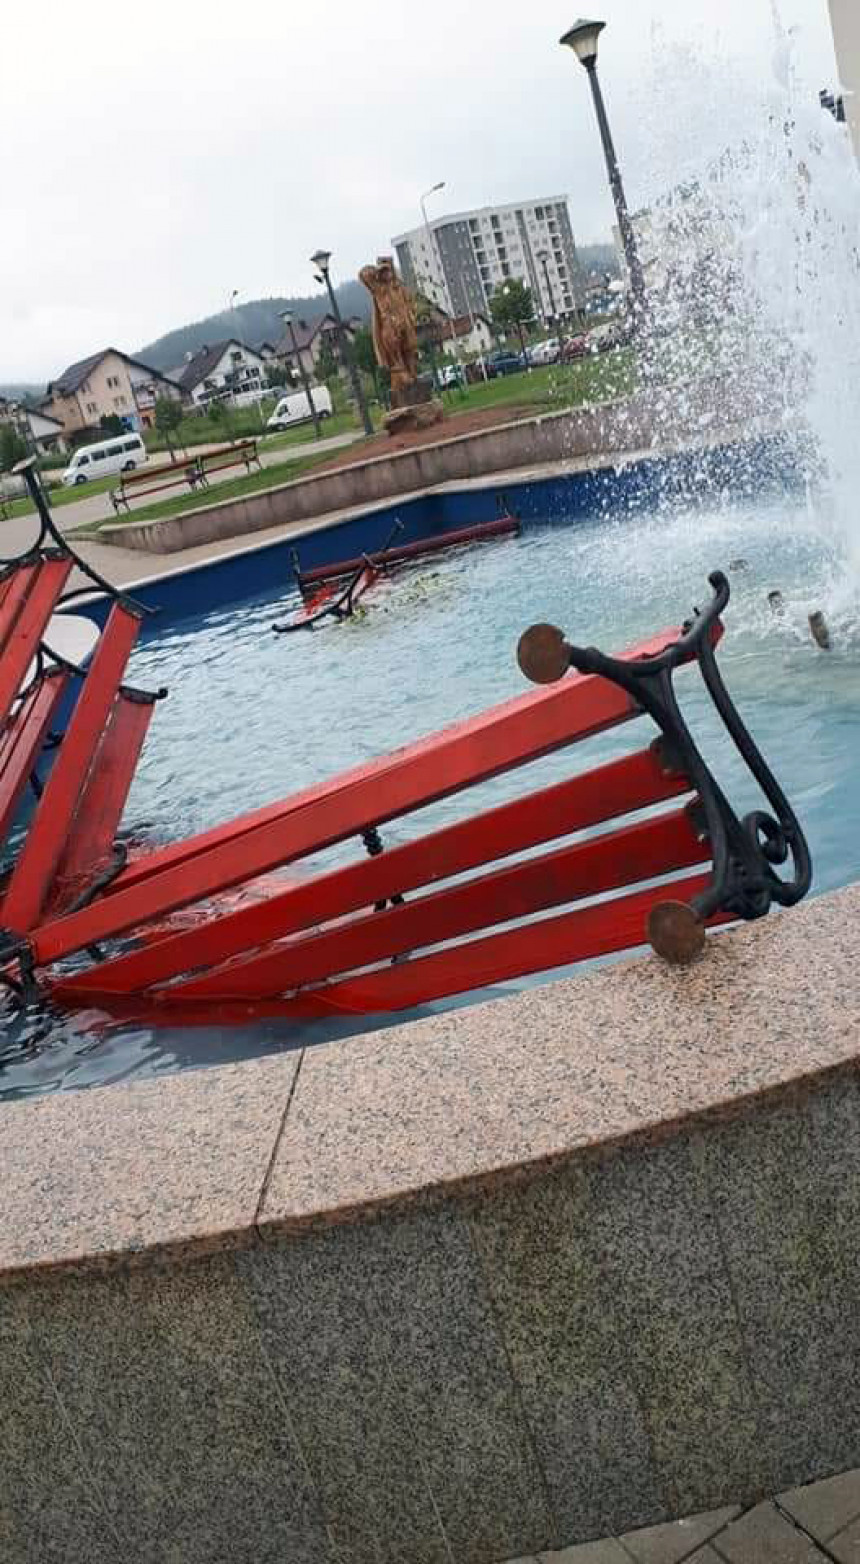 Polomljene klupe bačene u fontanu na šetalištu